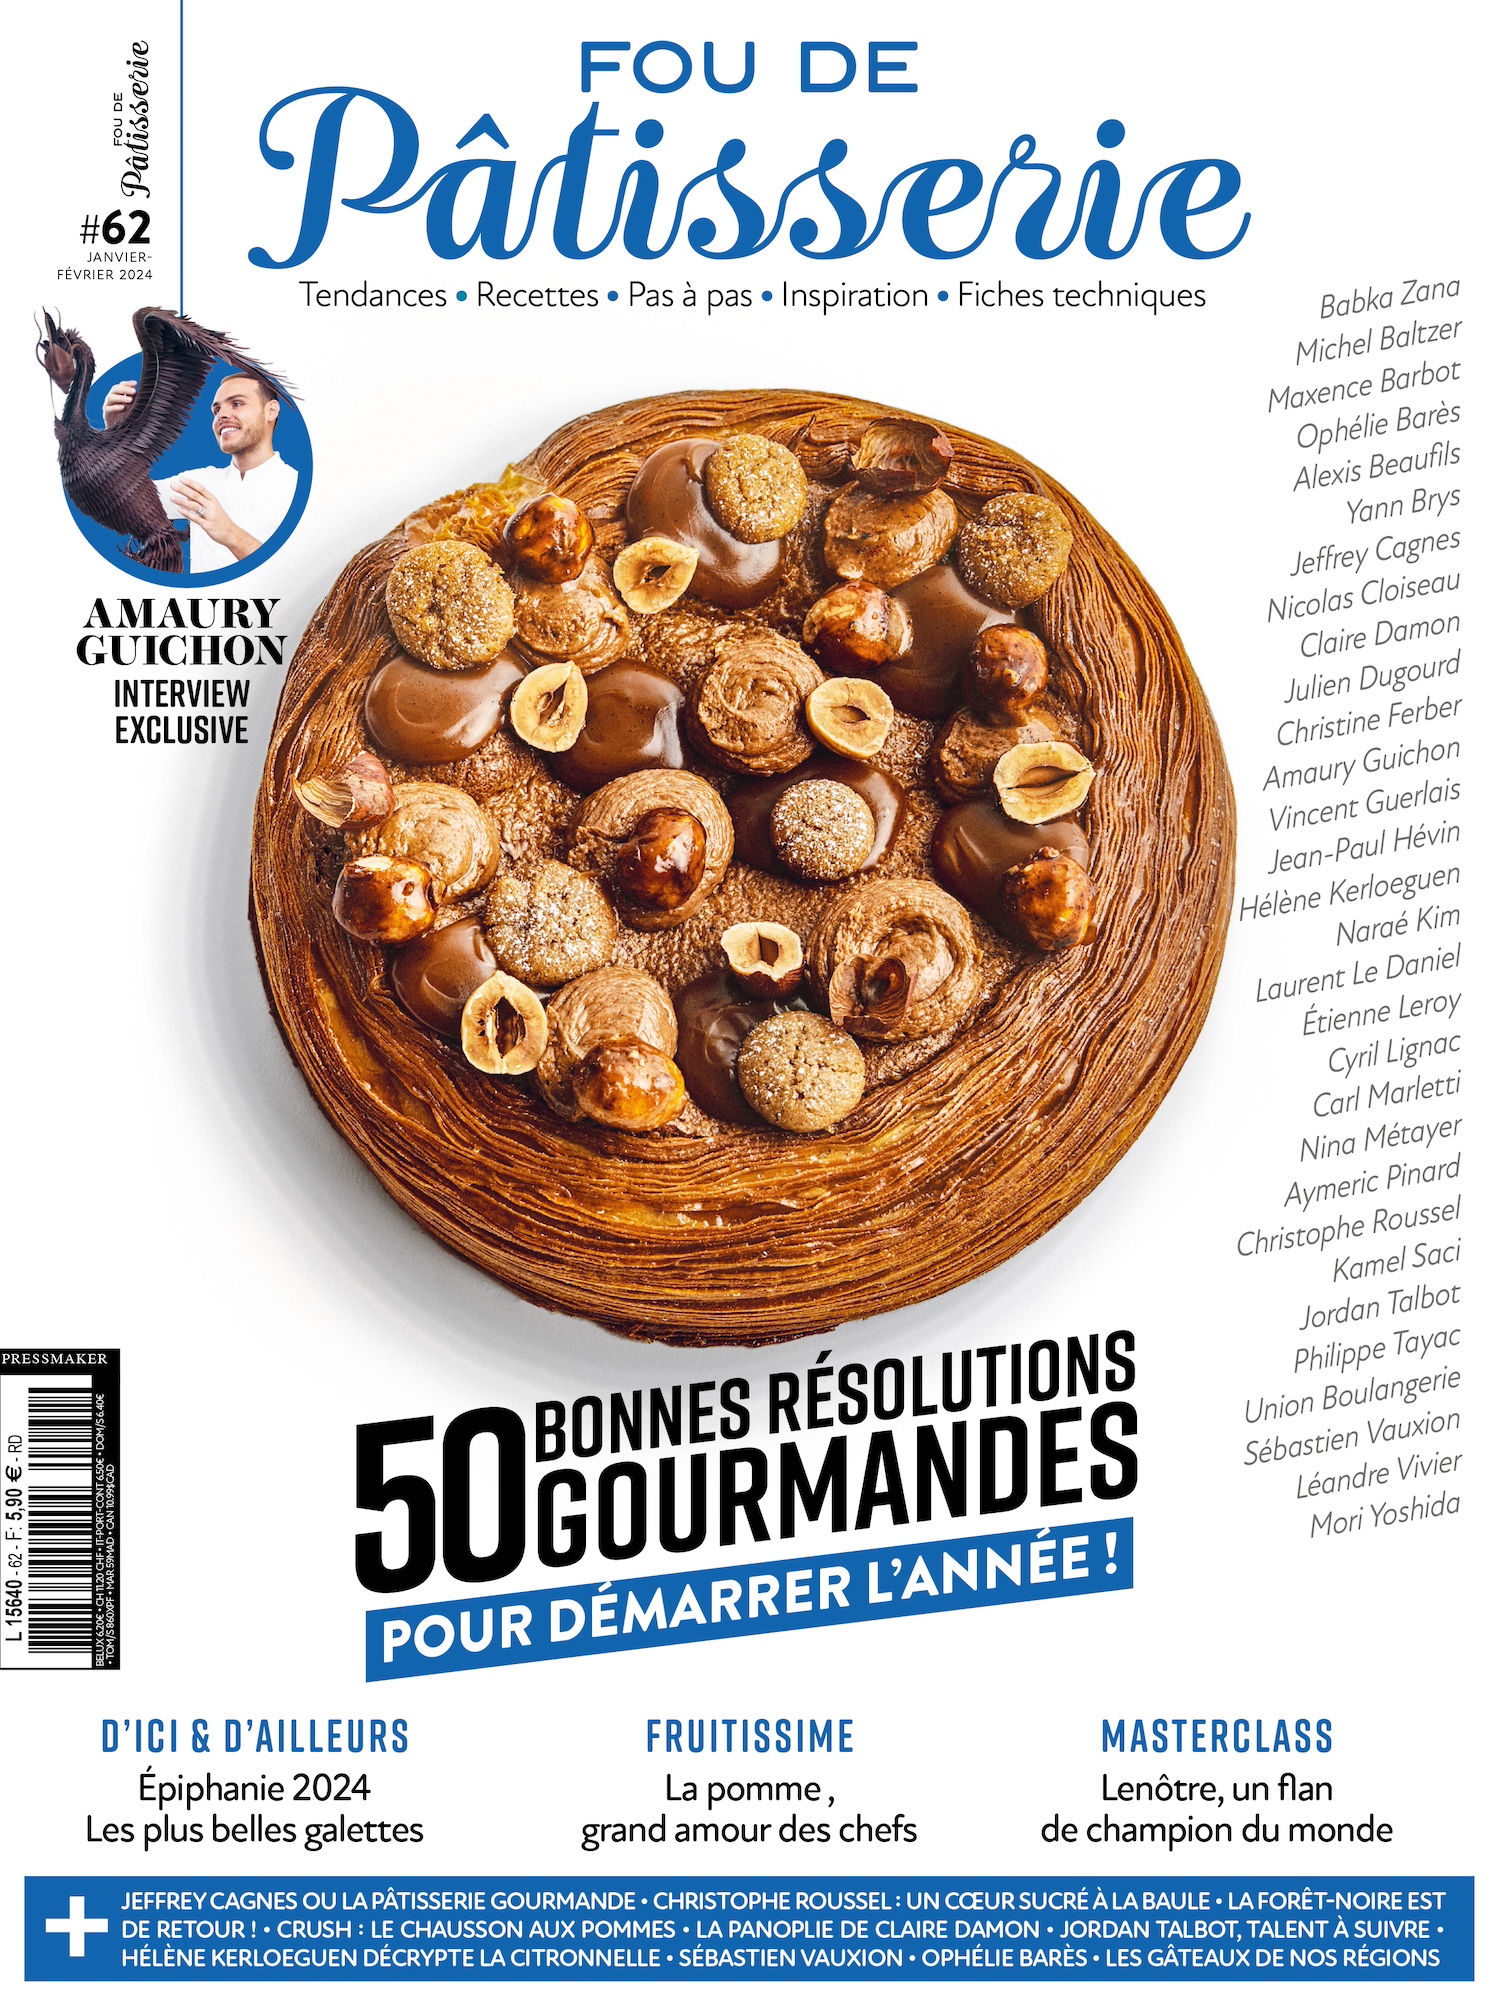 N°62 - Magazine Fou de pâtisserie